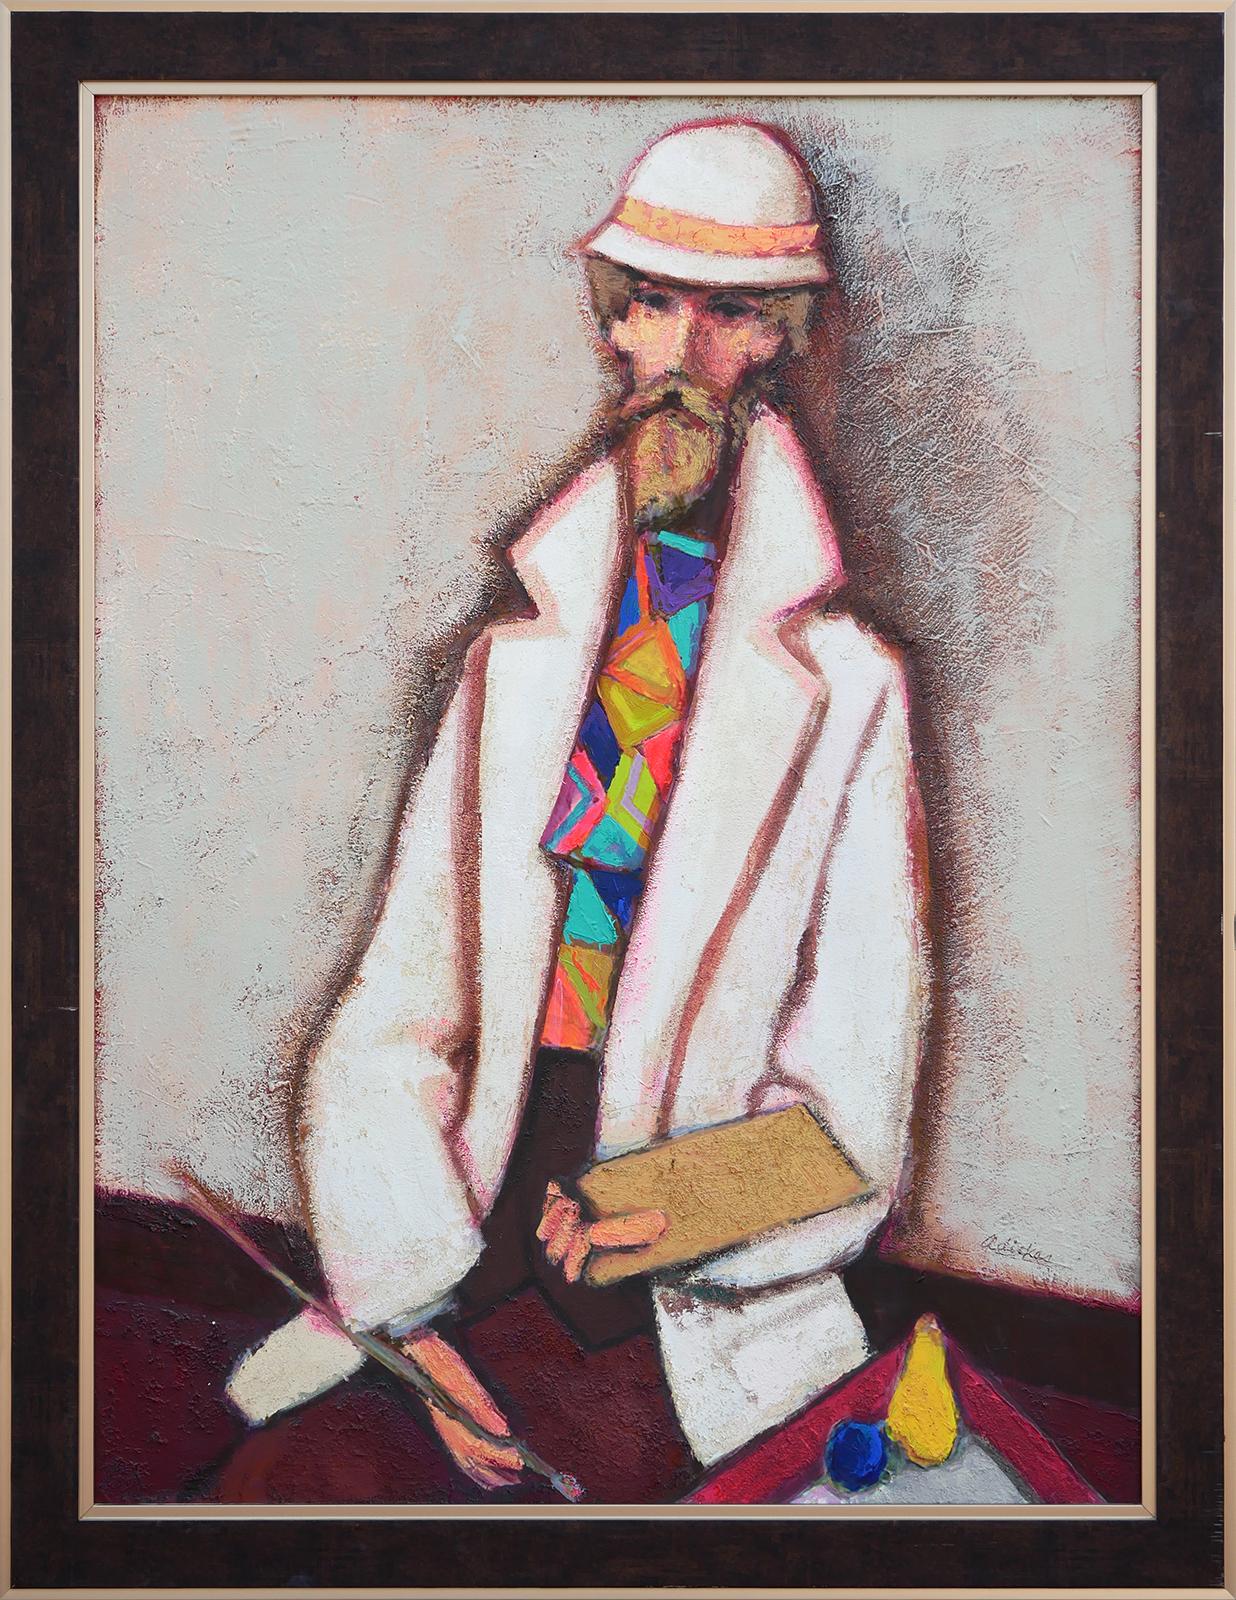 Abstract Painting David Adickes - "Artist White Suit, Wild Tie", Peinture de portrait abstrait moderne et colorée